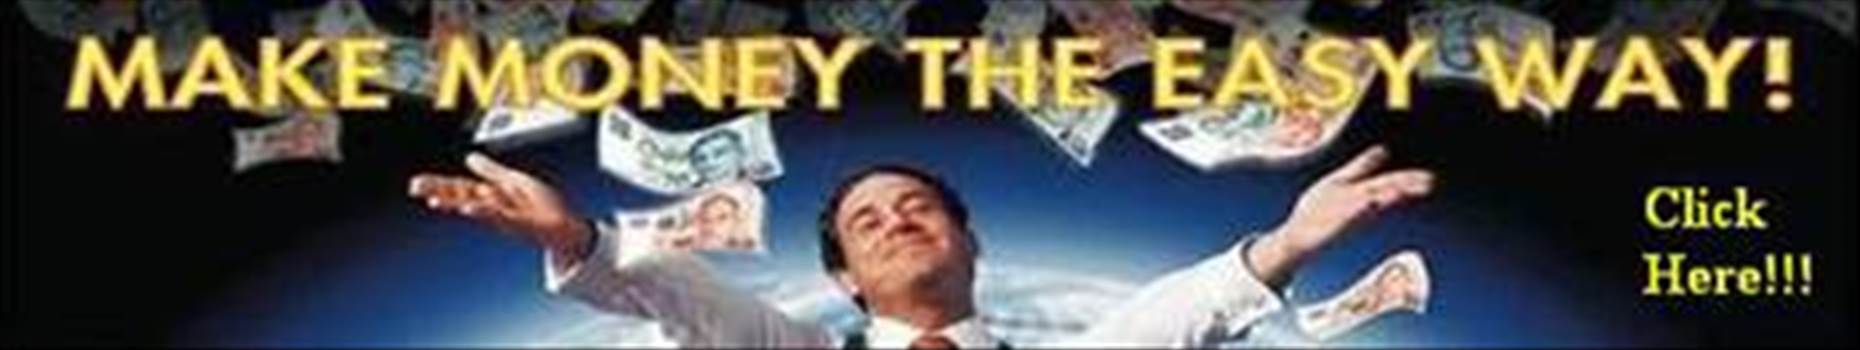 Make-Money-the-easy-way-banner 3.jpg (resized) - 